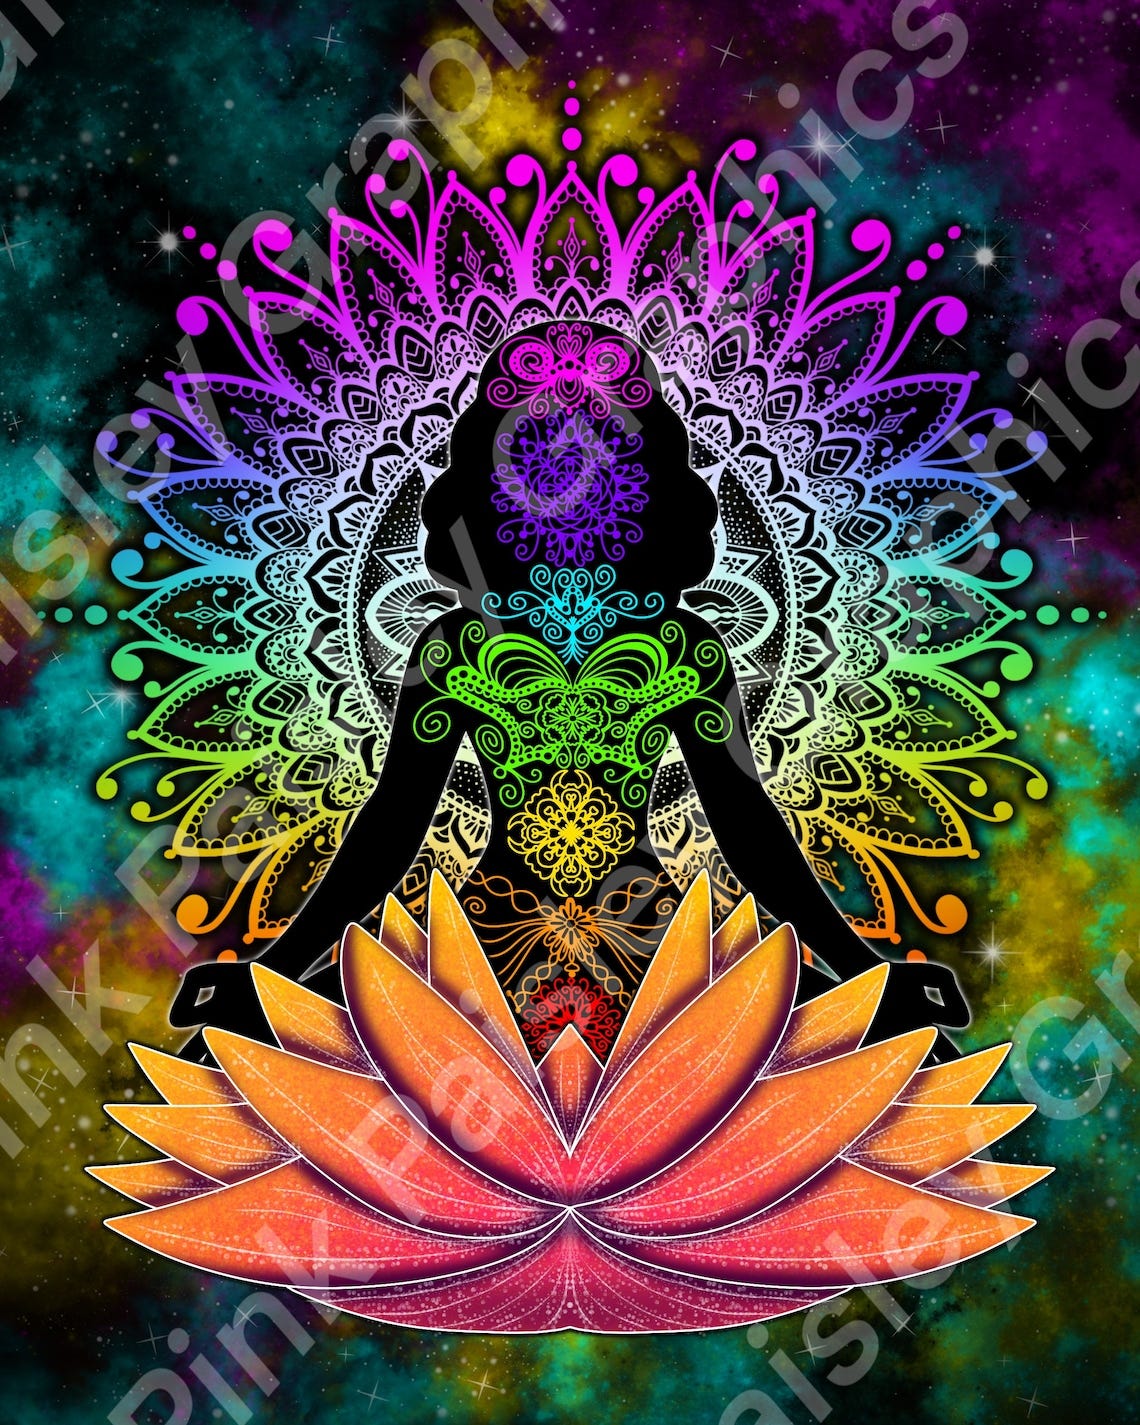 Zen Chakras  Meditation  Lotus Flower  Spiritual  Digital image 1